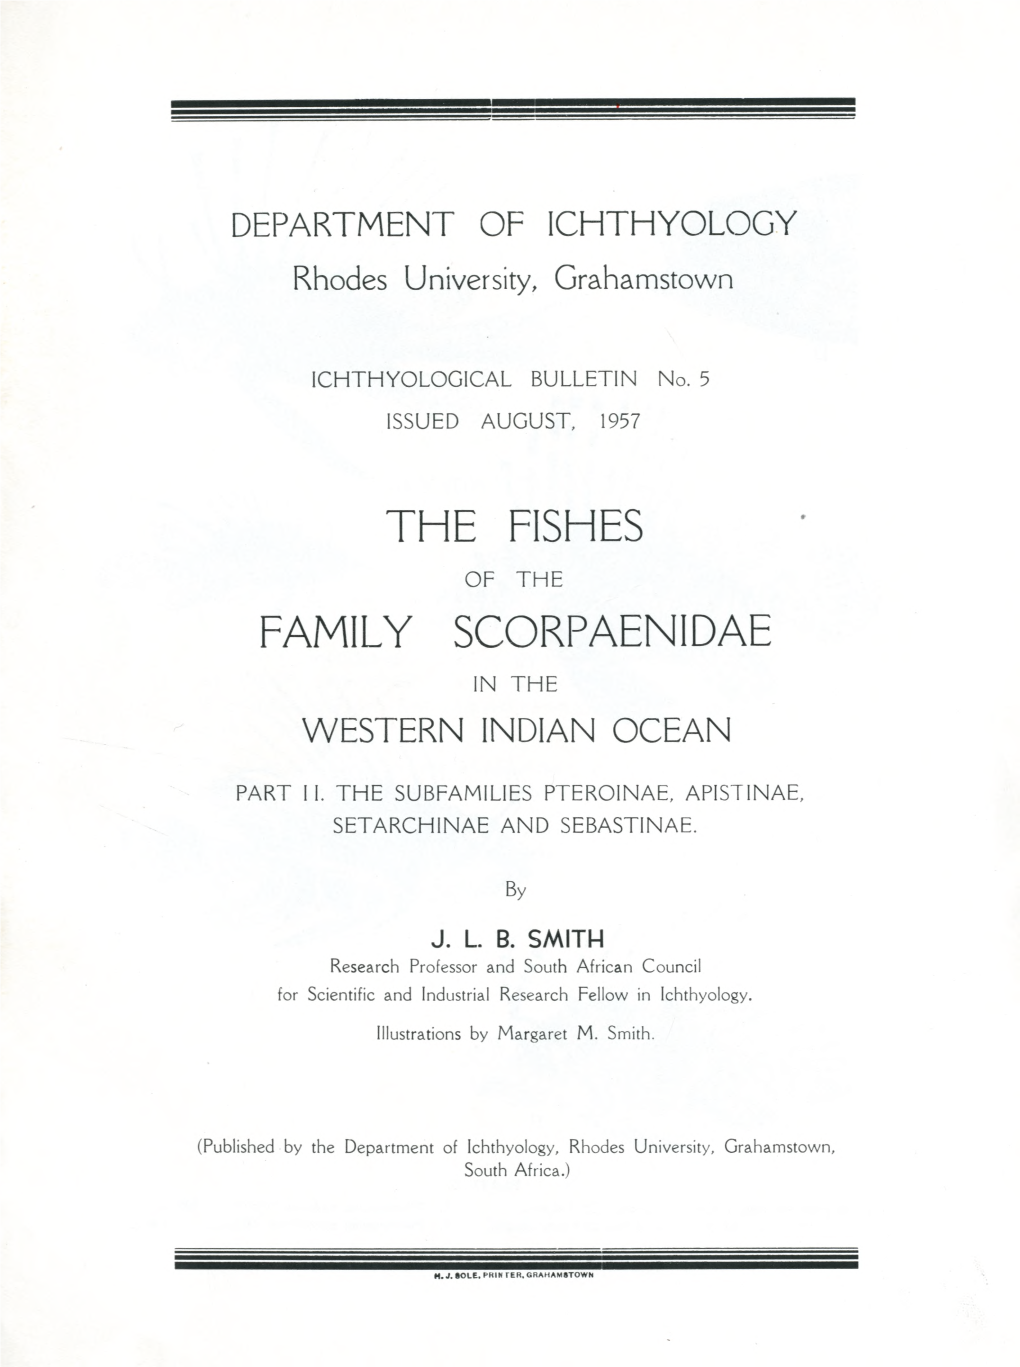 T H E Fishes Family Scorpaenidae